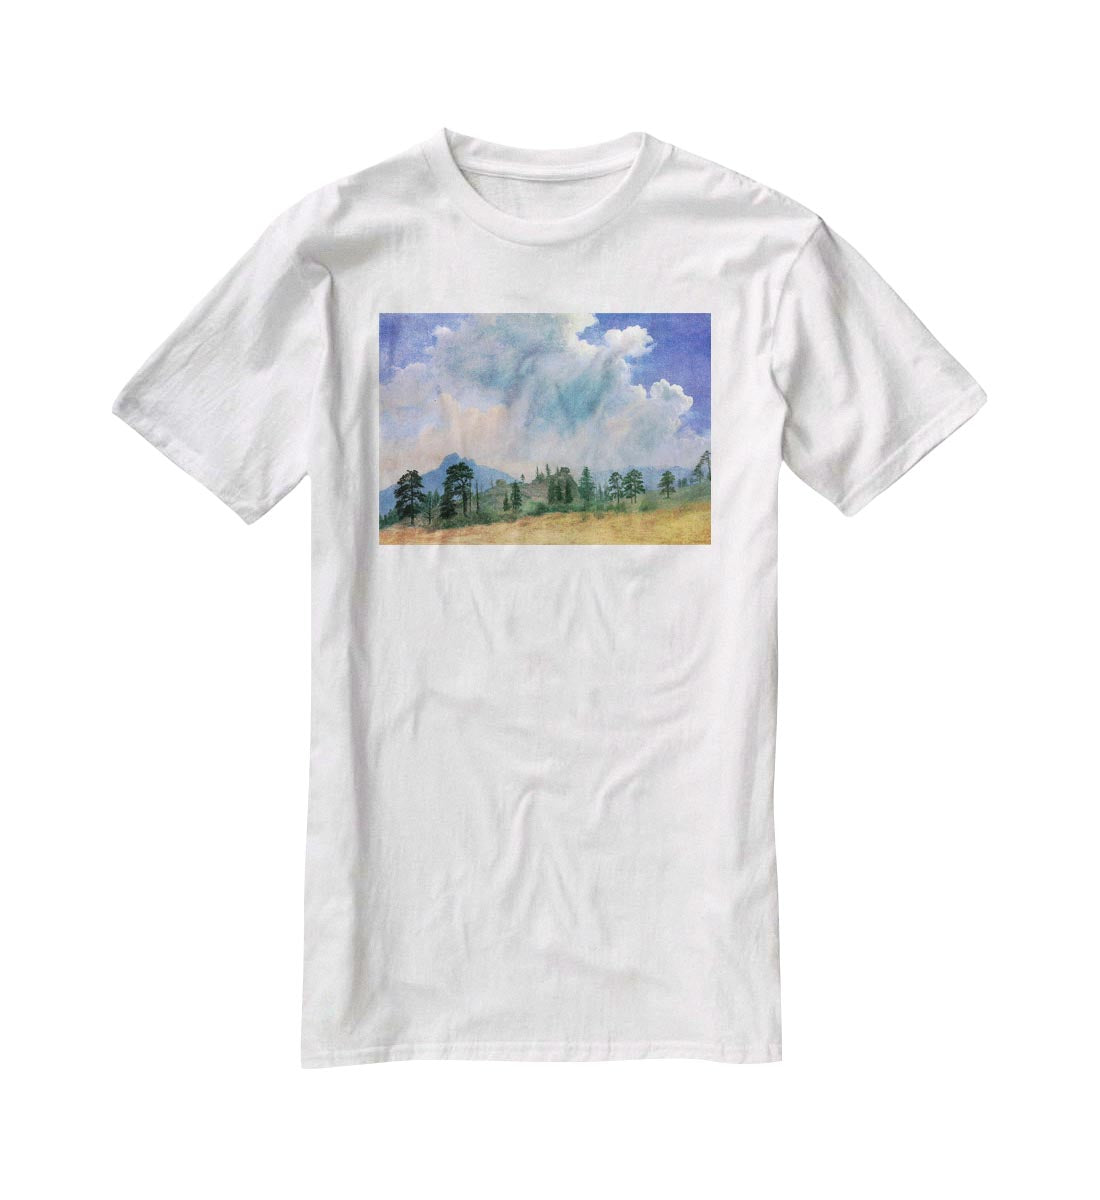 Fir trees and storm clouds by Bierstadt T-Shirt - Canvas Art Rocks - 5